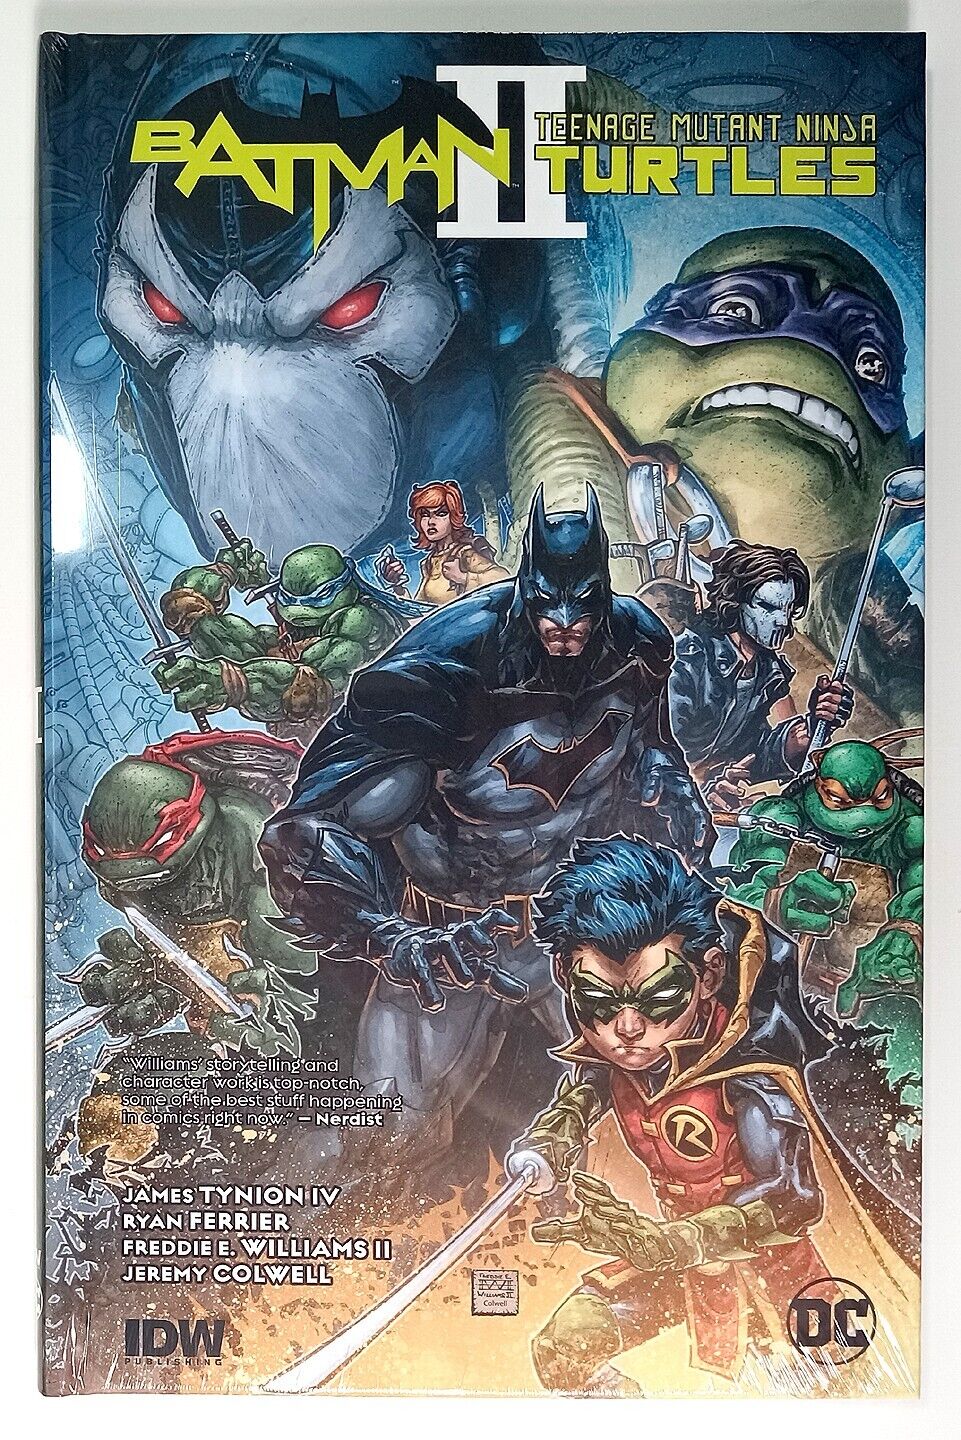 Batman Teenage Mutant Ninja Turtles II Vol. 1  HC (2018)  DC/IDW